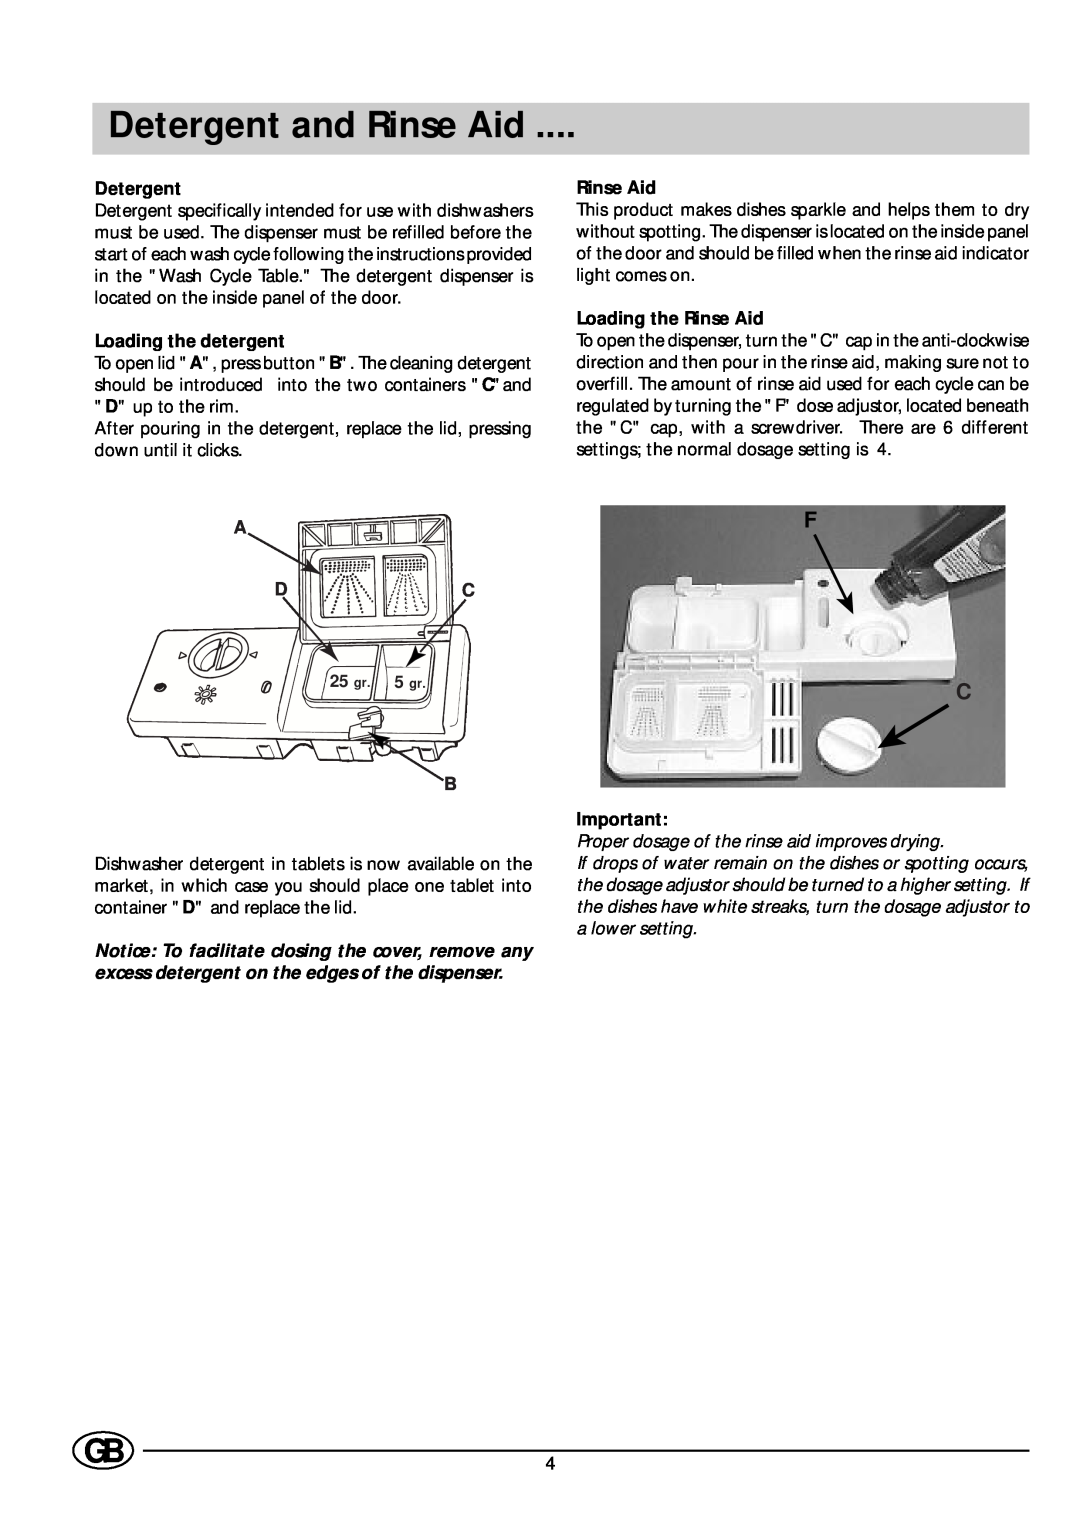 Indesit DI 67 manual Detergent and Rinse Aid, Loading the detergent, A D C, Loading the Rinse Aid 